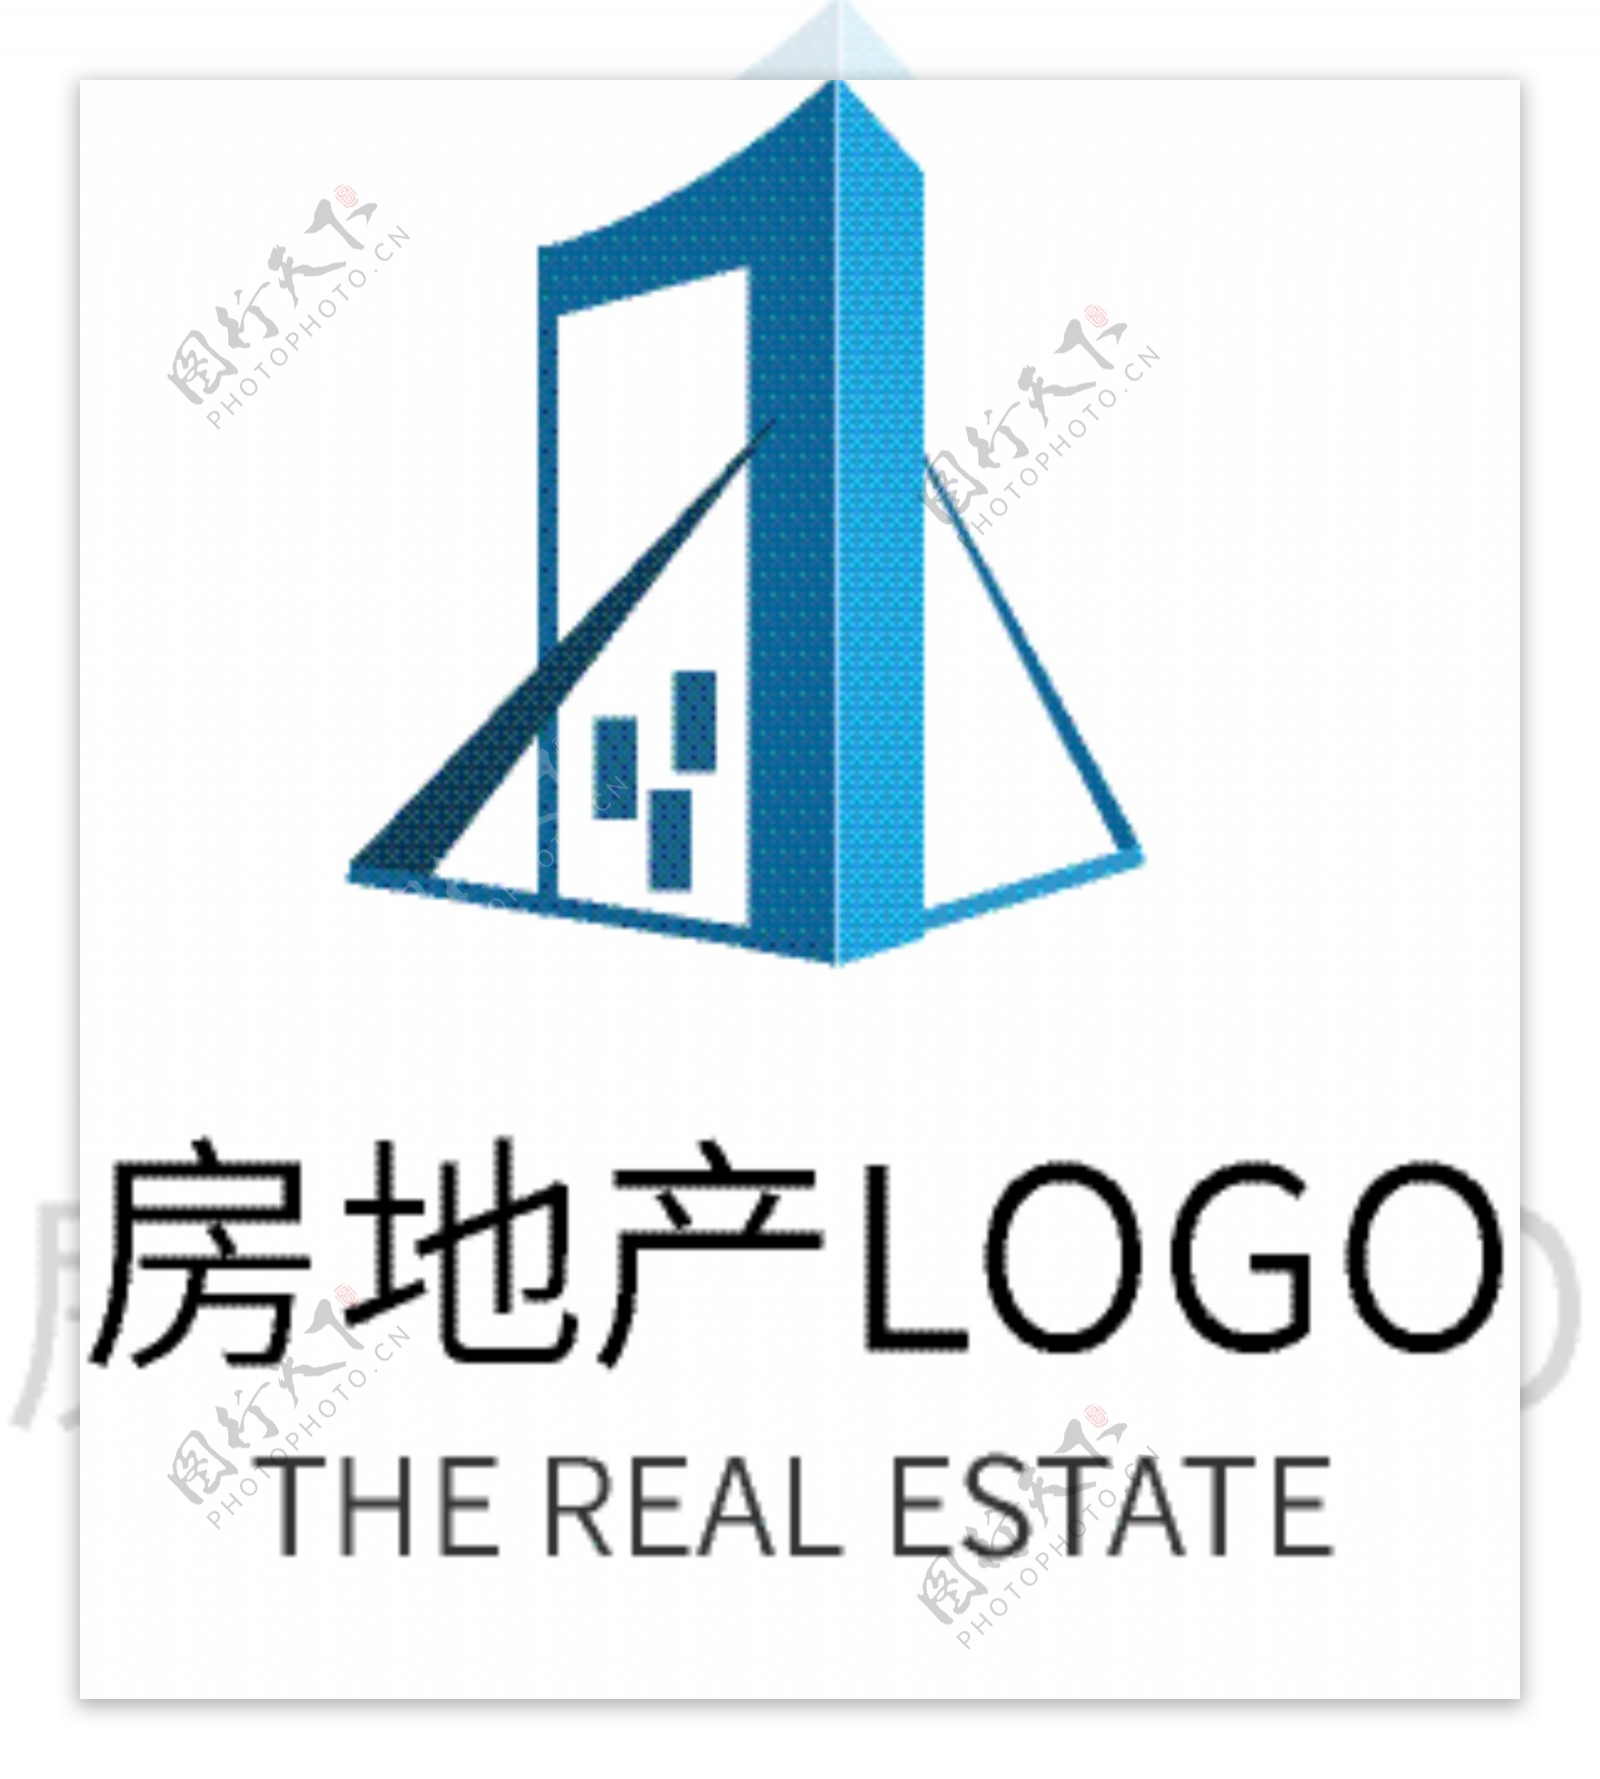 蓝色现代房地产商务企业logo